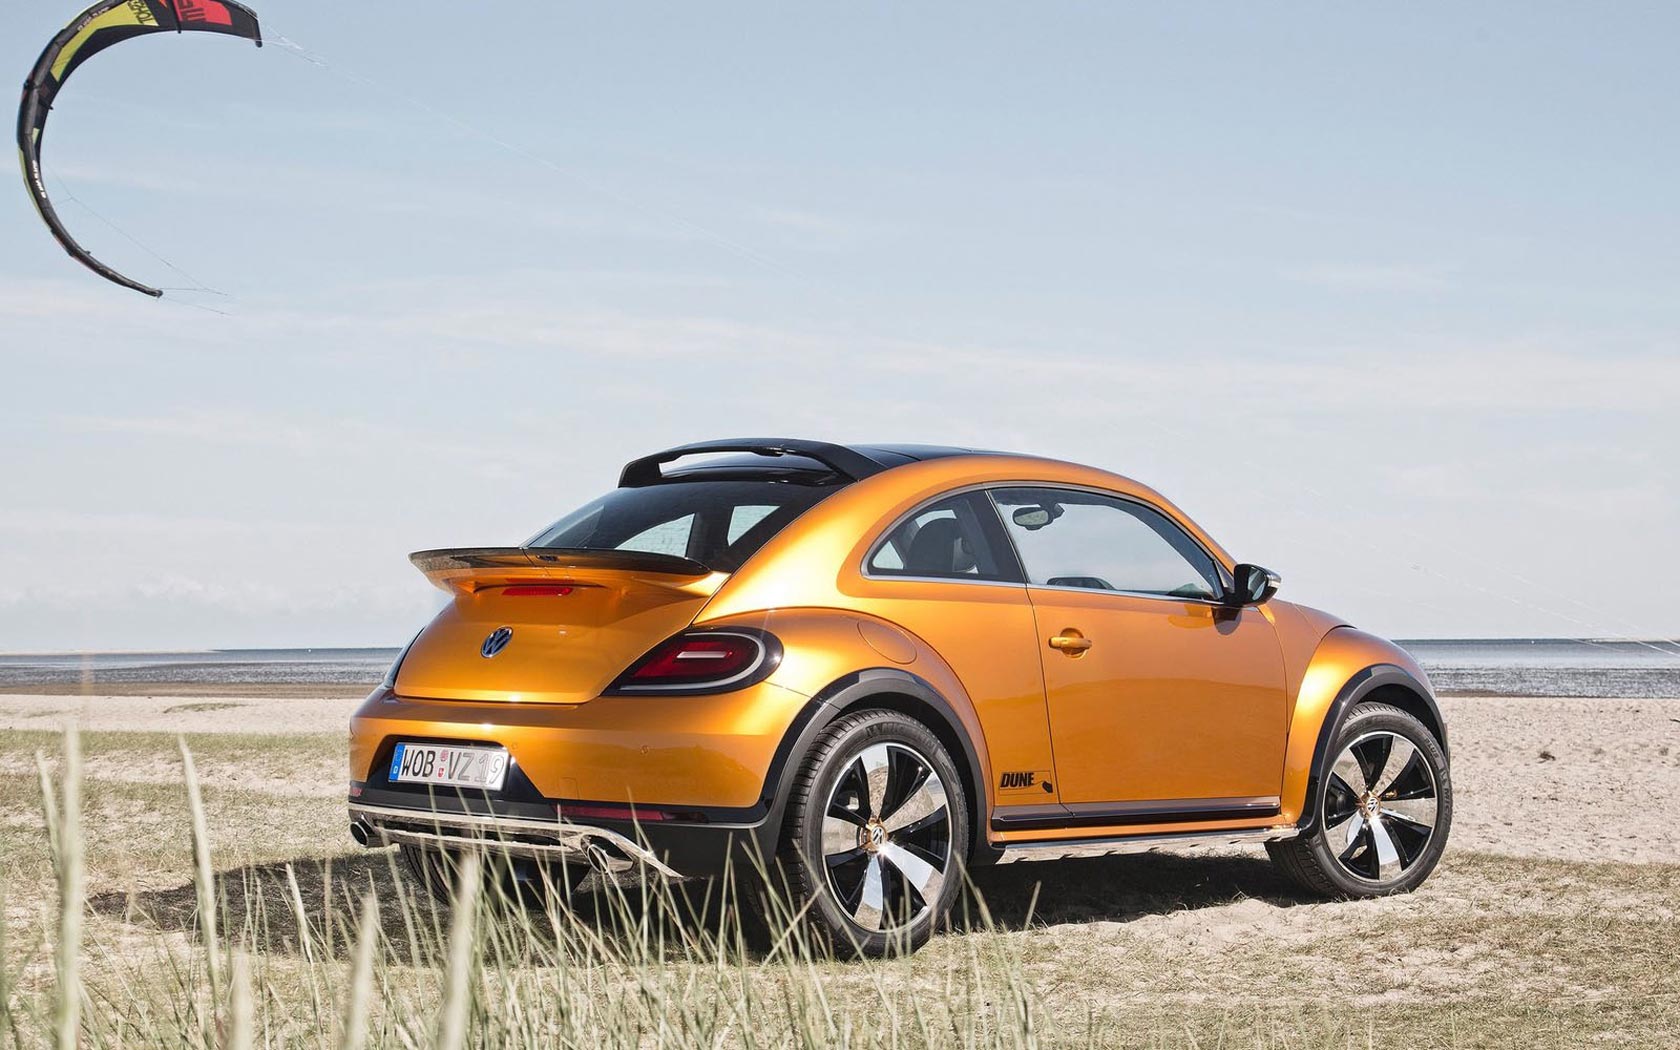  Volkswagen Beetle Dune Concept 